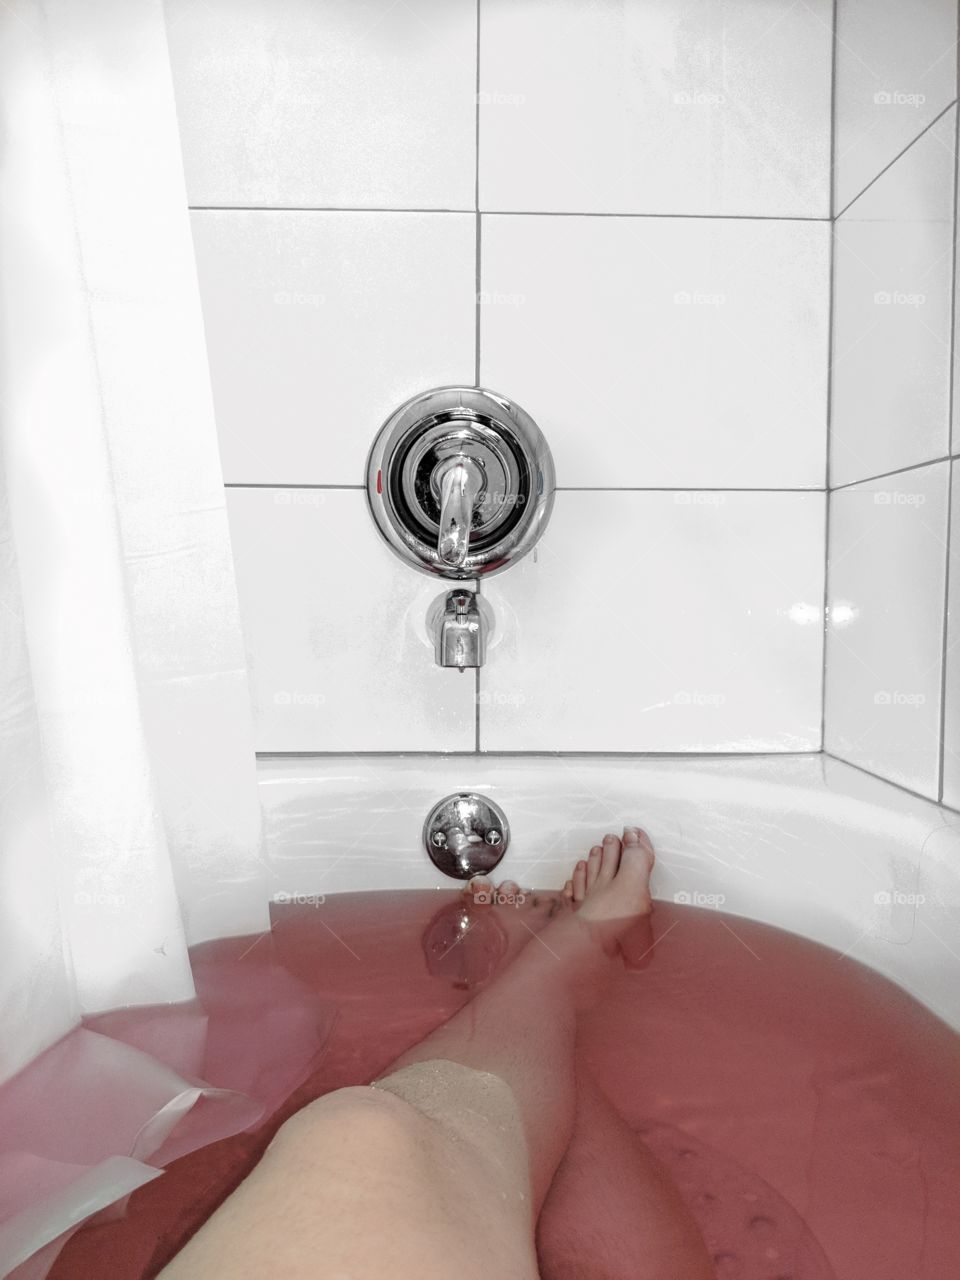 Lush bath bomb in a minimalistic bathroom